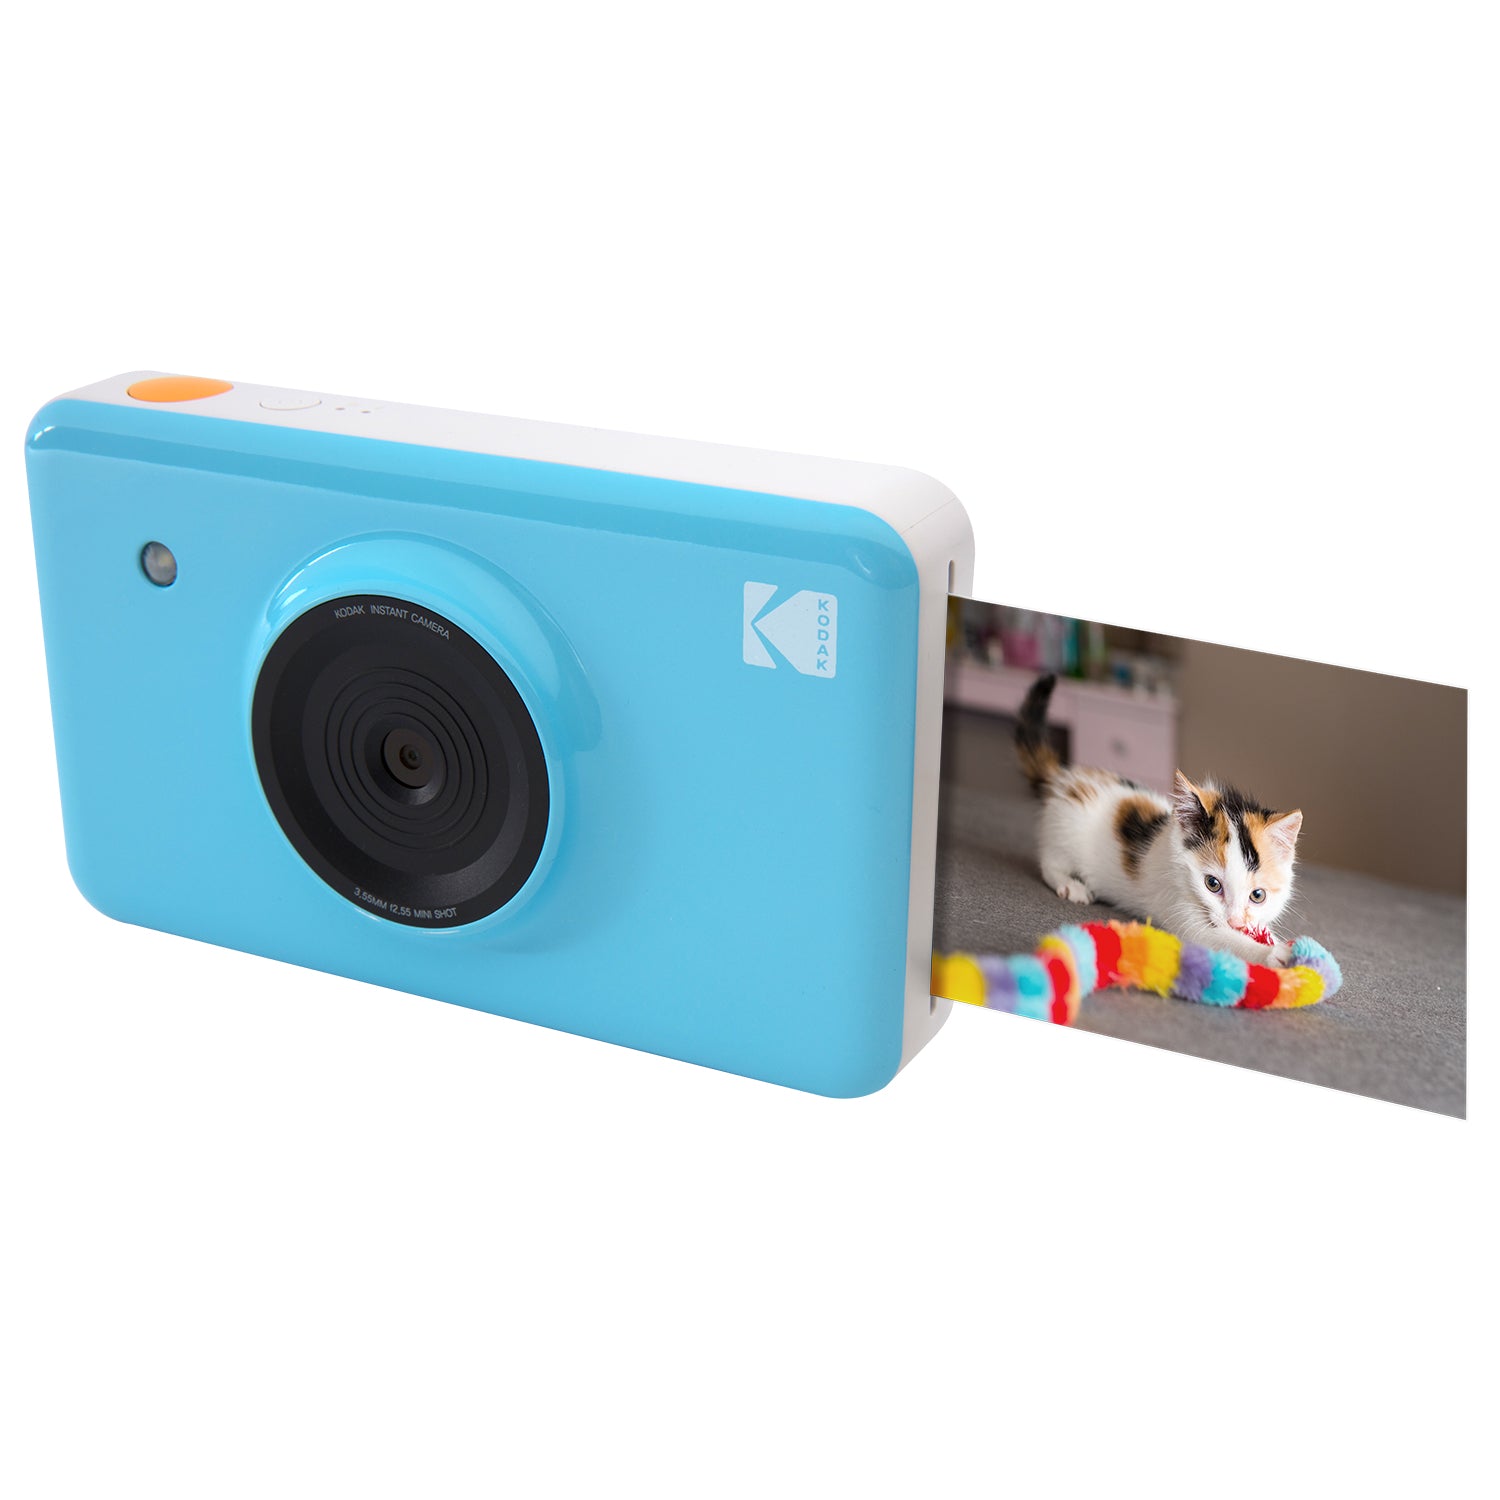 kodak mini shot wireless instant digital camera